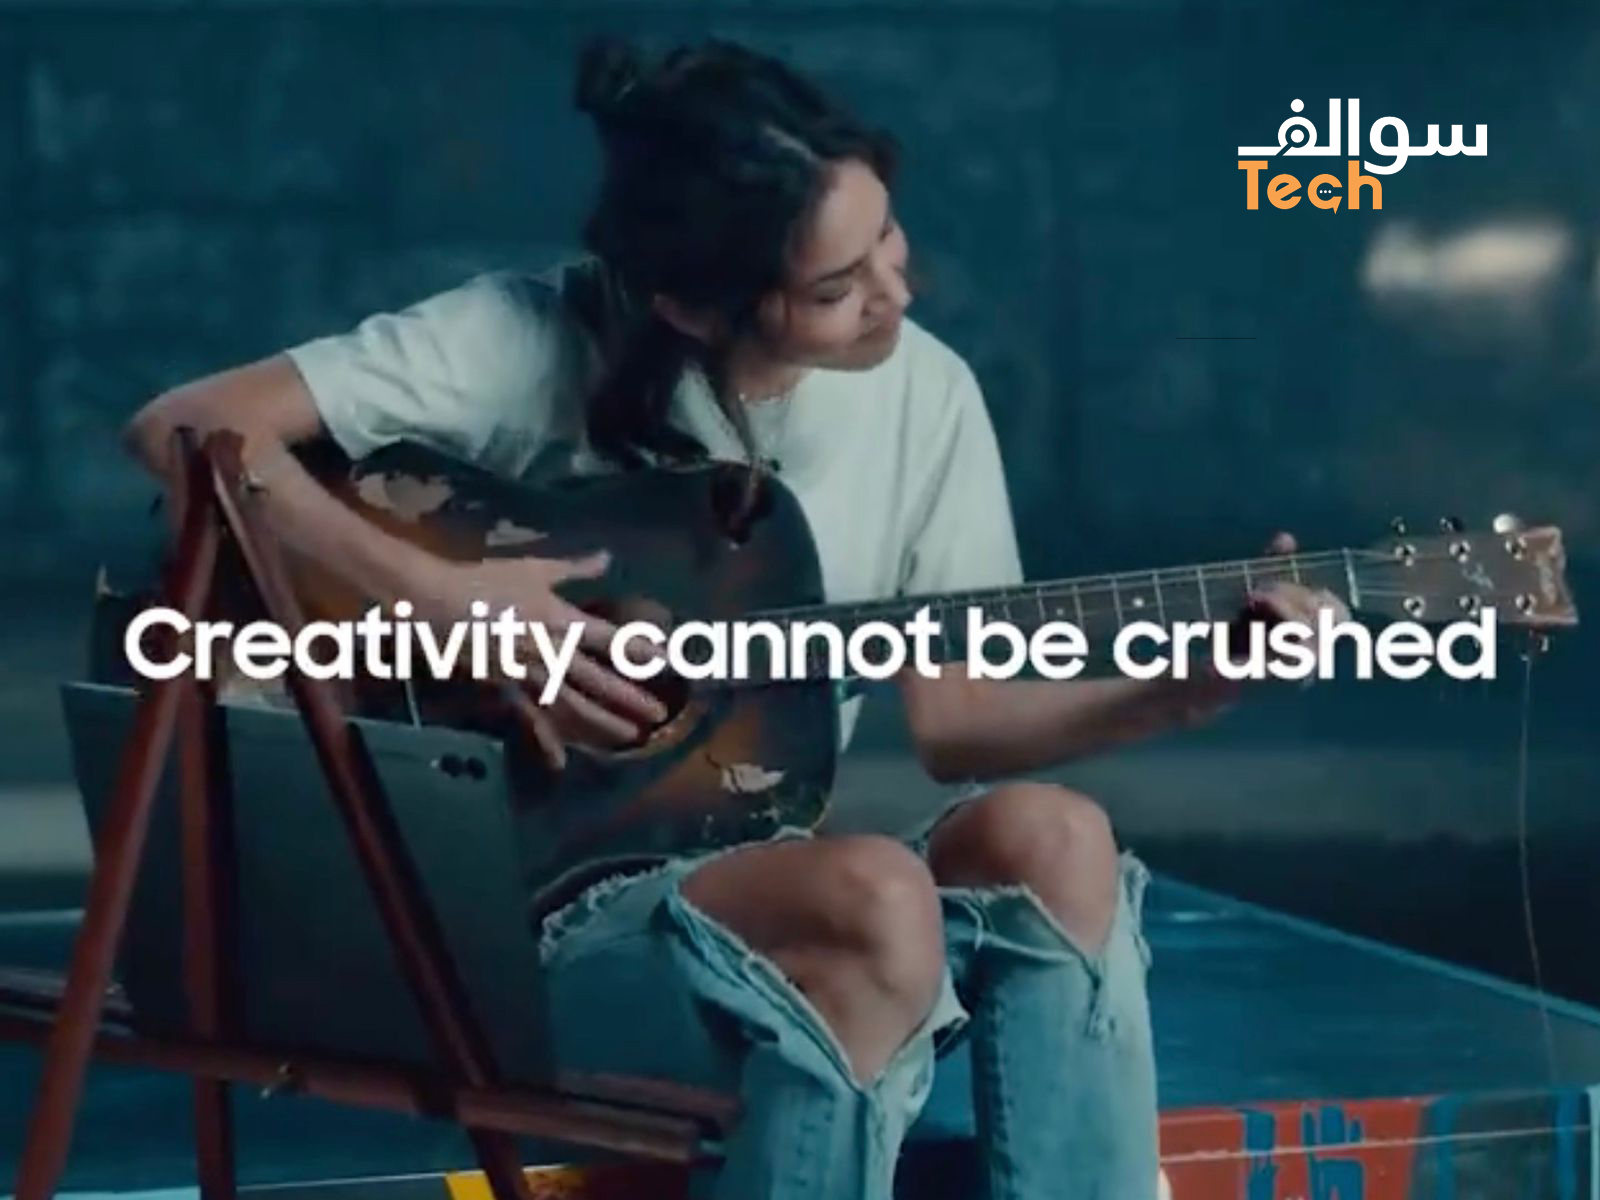 سامسونج تسخر من إعلان آيباد برو لشركة آبل في إعلانها "UnCrush": "لا يمكن سحق الإبداع"!